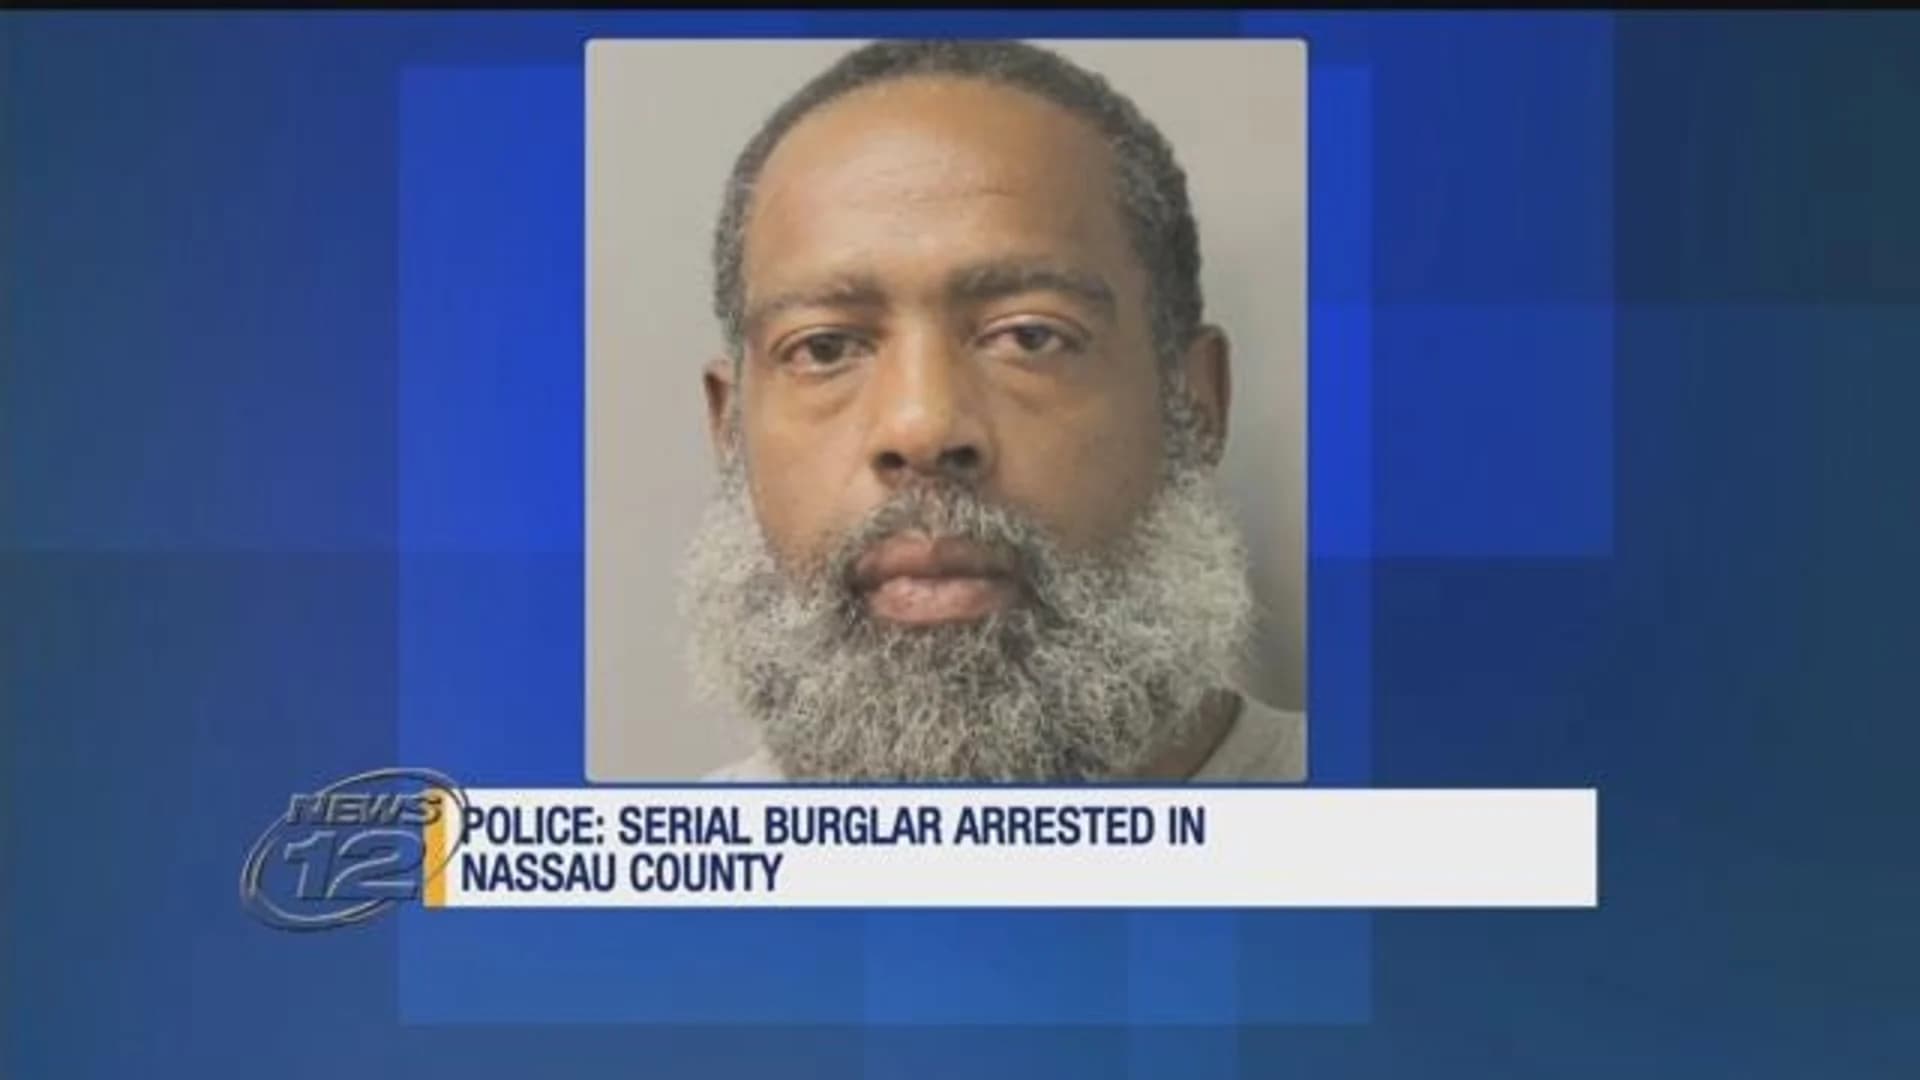 Police arrest alleged serial burglar in Nassau County